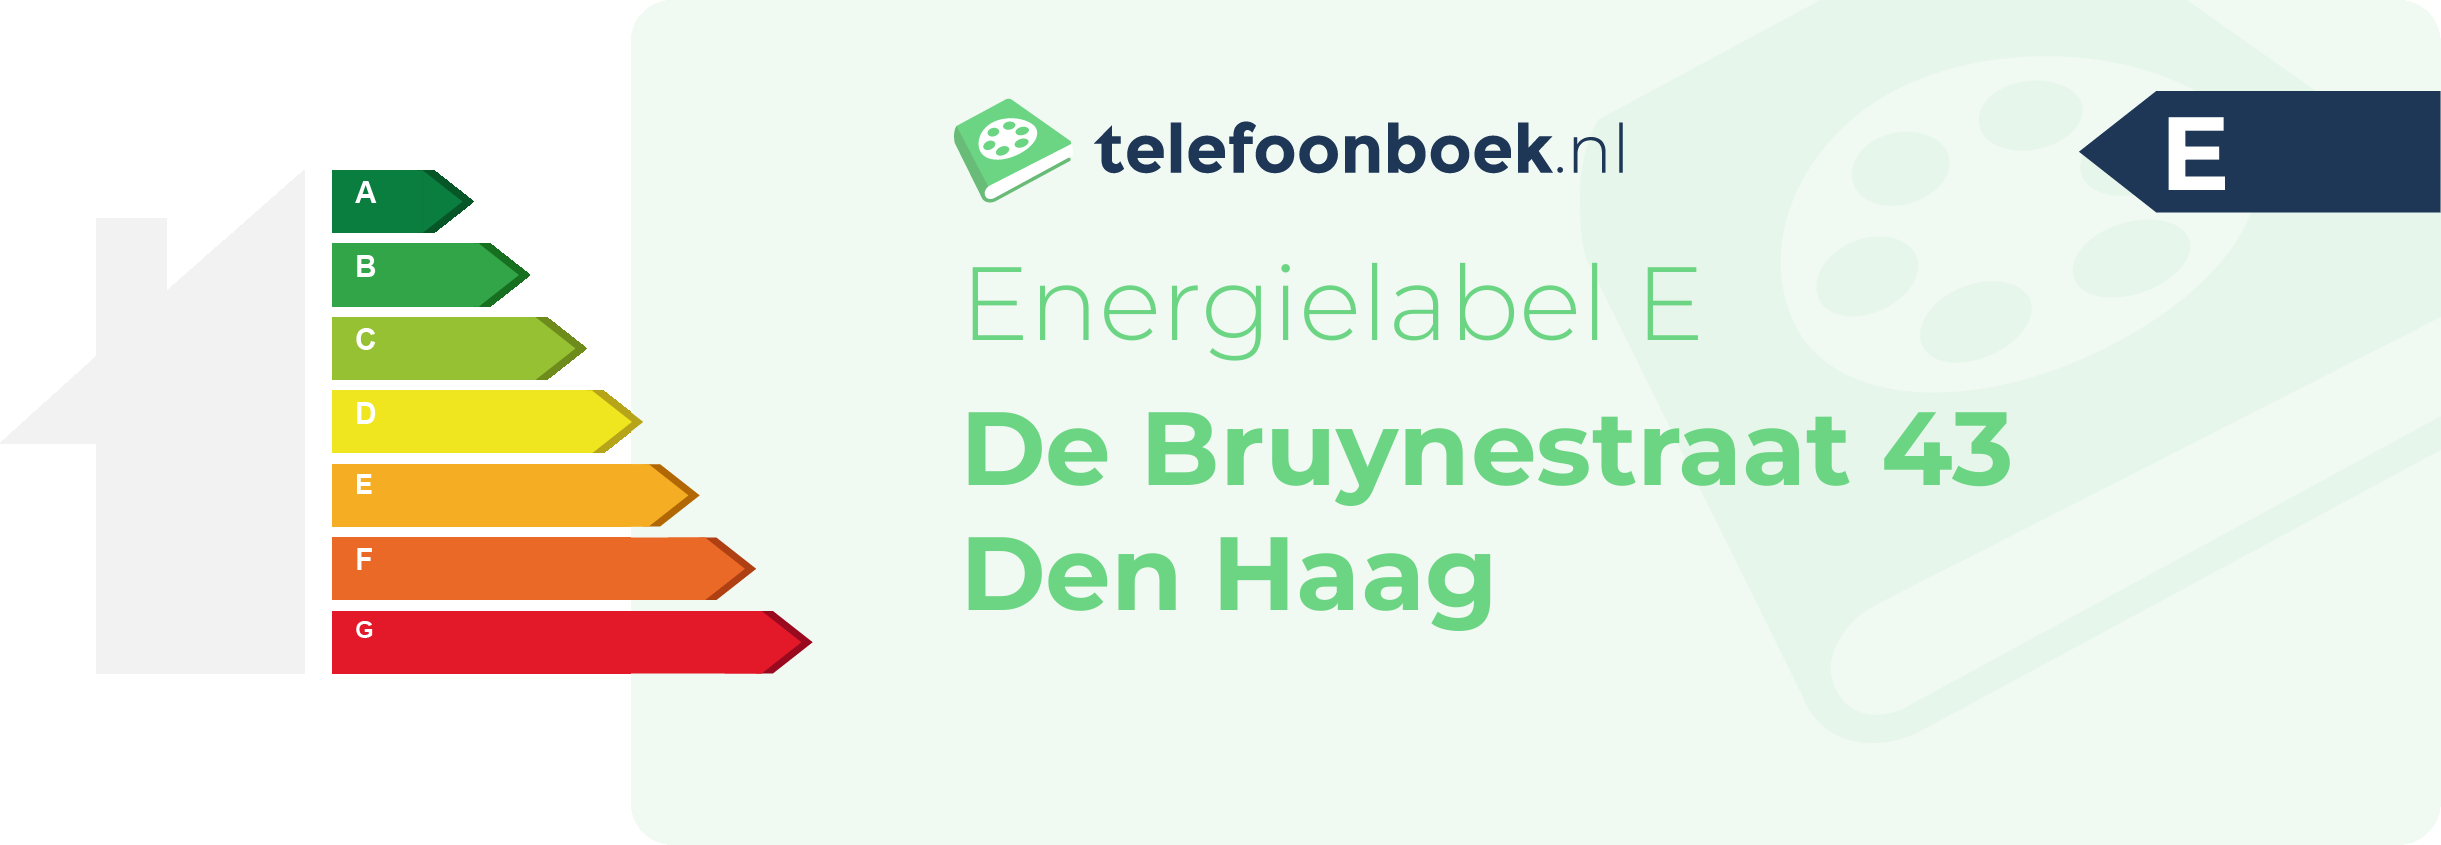 Energielabel De Bruynestraat 43 Den Haag